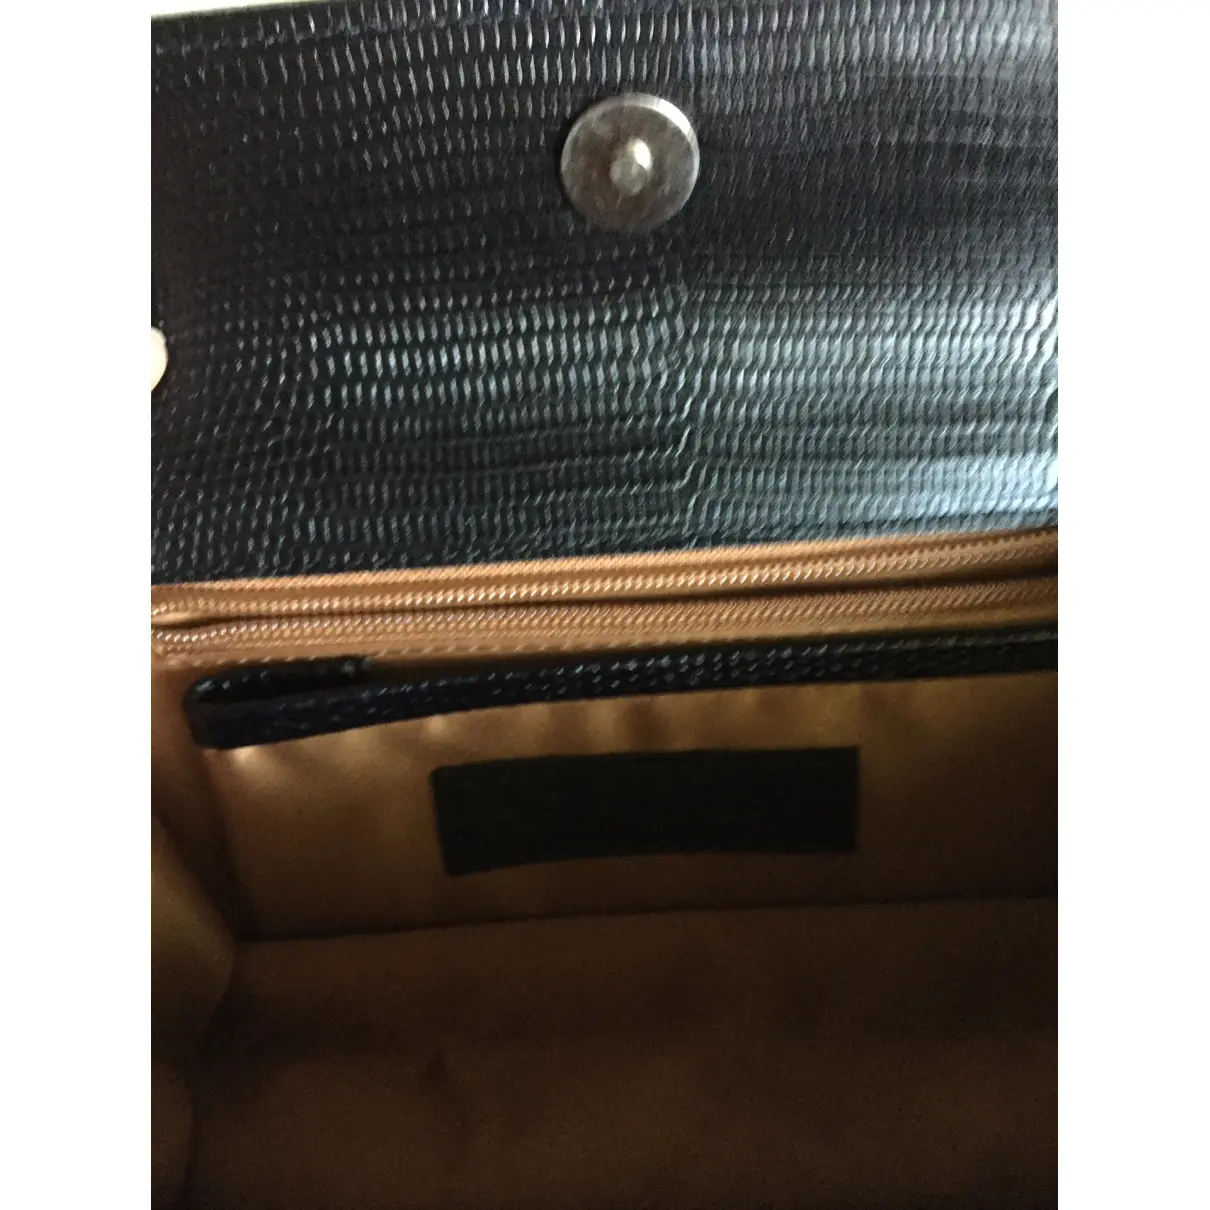 Buy Dsquared2 Leather handbag online